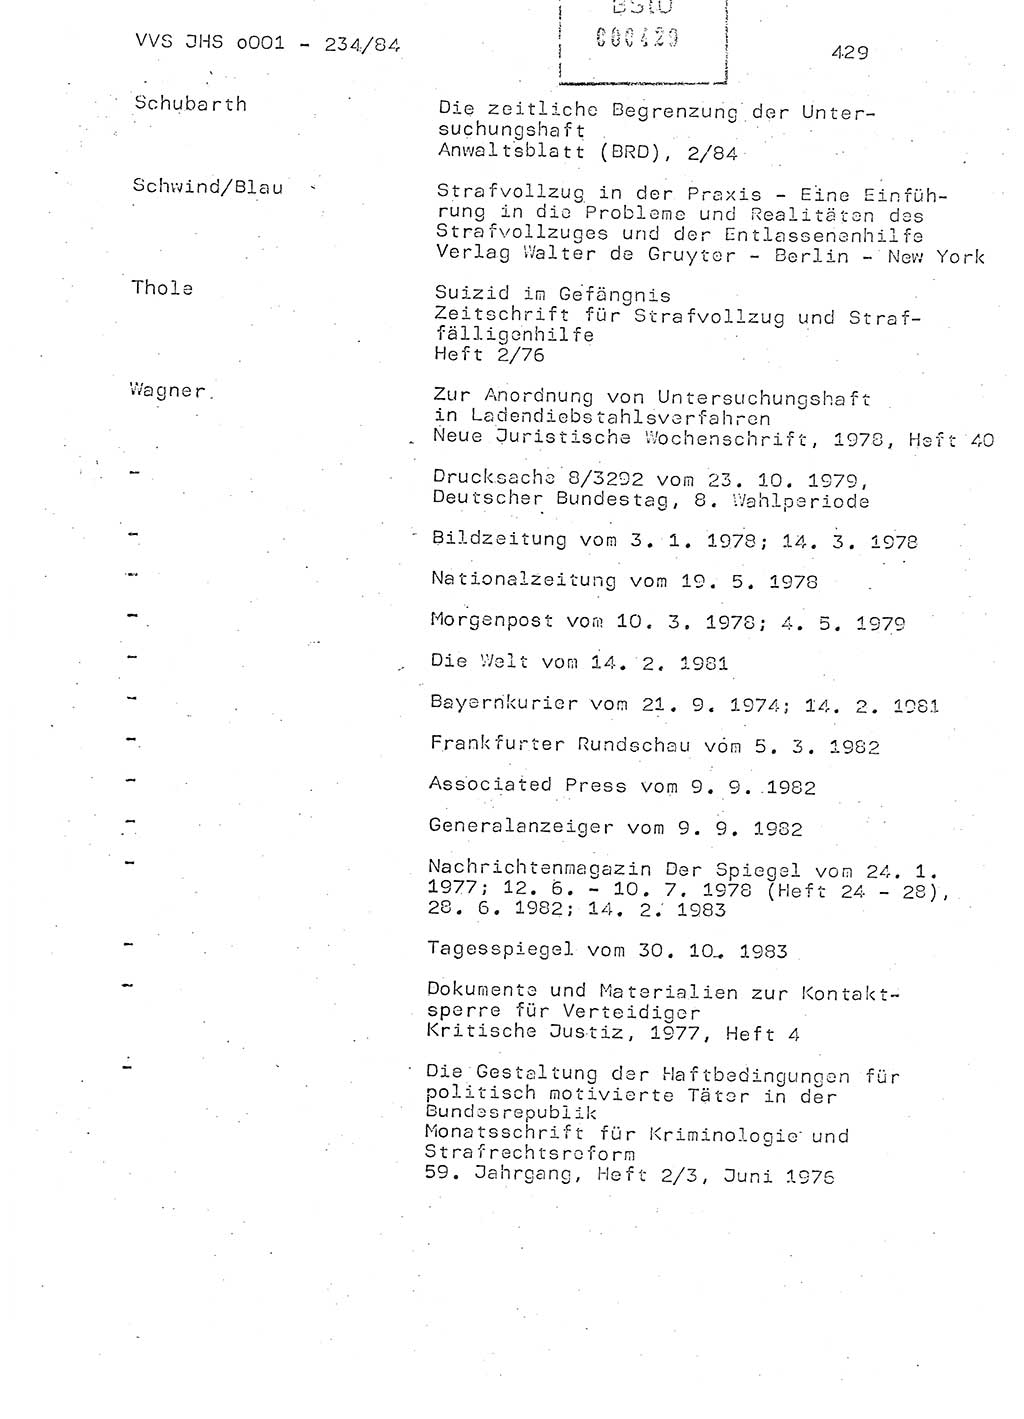 Dissertation Oberst Siegfried Rataizick (Abt. ⅩⅣ), Oberstleutnant Volkmar Heinz (Abt. ⅩⅣ), Oberstleutnant Werner Stein (HA Ⅸ), Hauptmann Heinz Conrad (JHS), Ministerium für Staatssicherheit (MfS) [Deutsche Demokratische Republik (DDR)], Juristische Hochschule (JHS), Vertrauliche Verschlußsache (VVS) o001-234/84, Potsdam 1984, Seite 429 (Diss. MfS DDR JHS VVS o001-234/84 1984, S. 429)